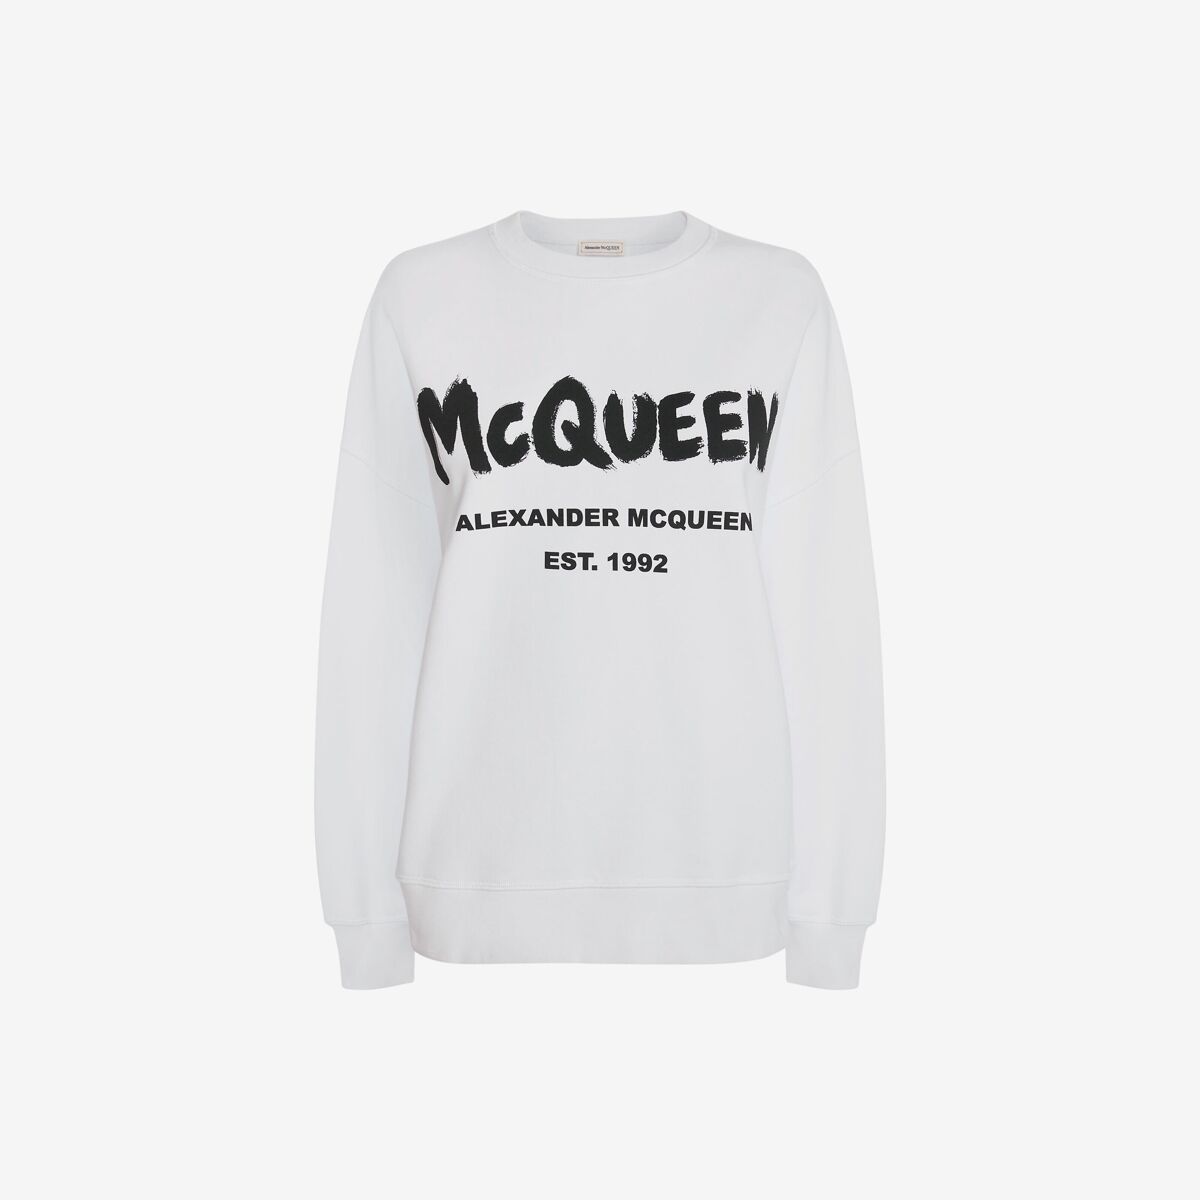 ALEXANDER MCQUEEN - Mc Queen Graffiti Sweatshirt - Item 659975QZAD50909